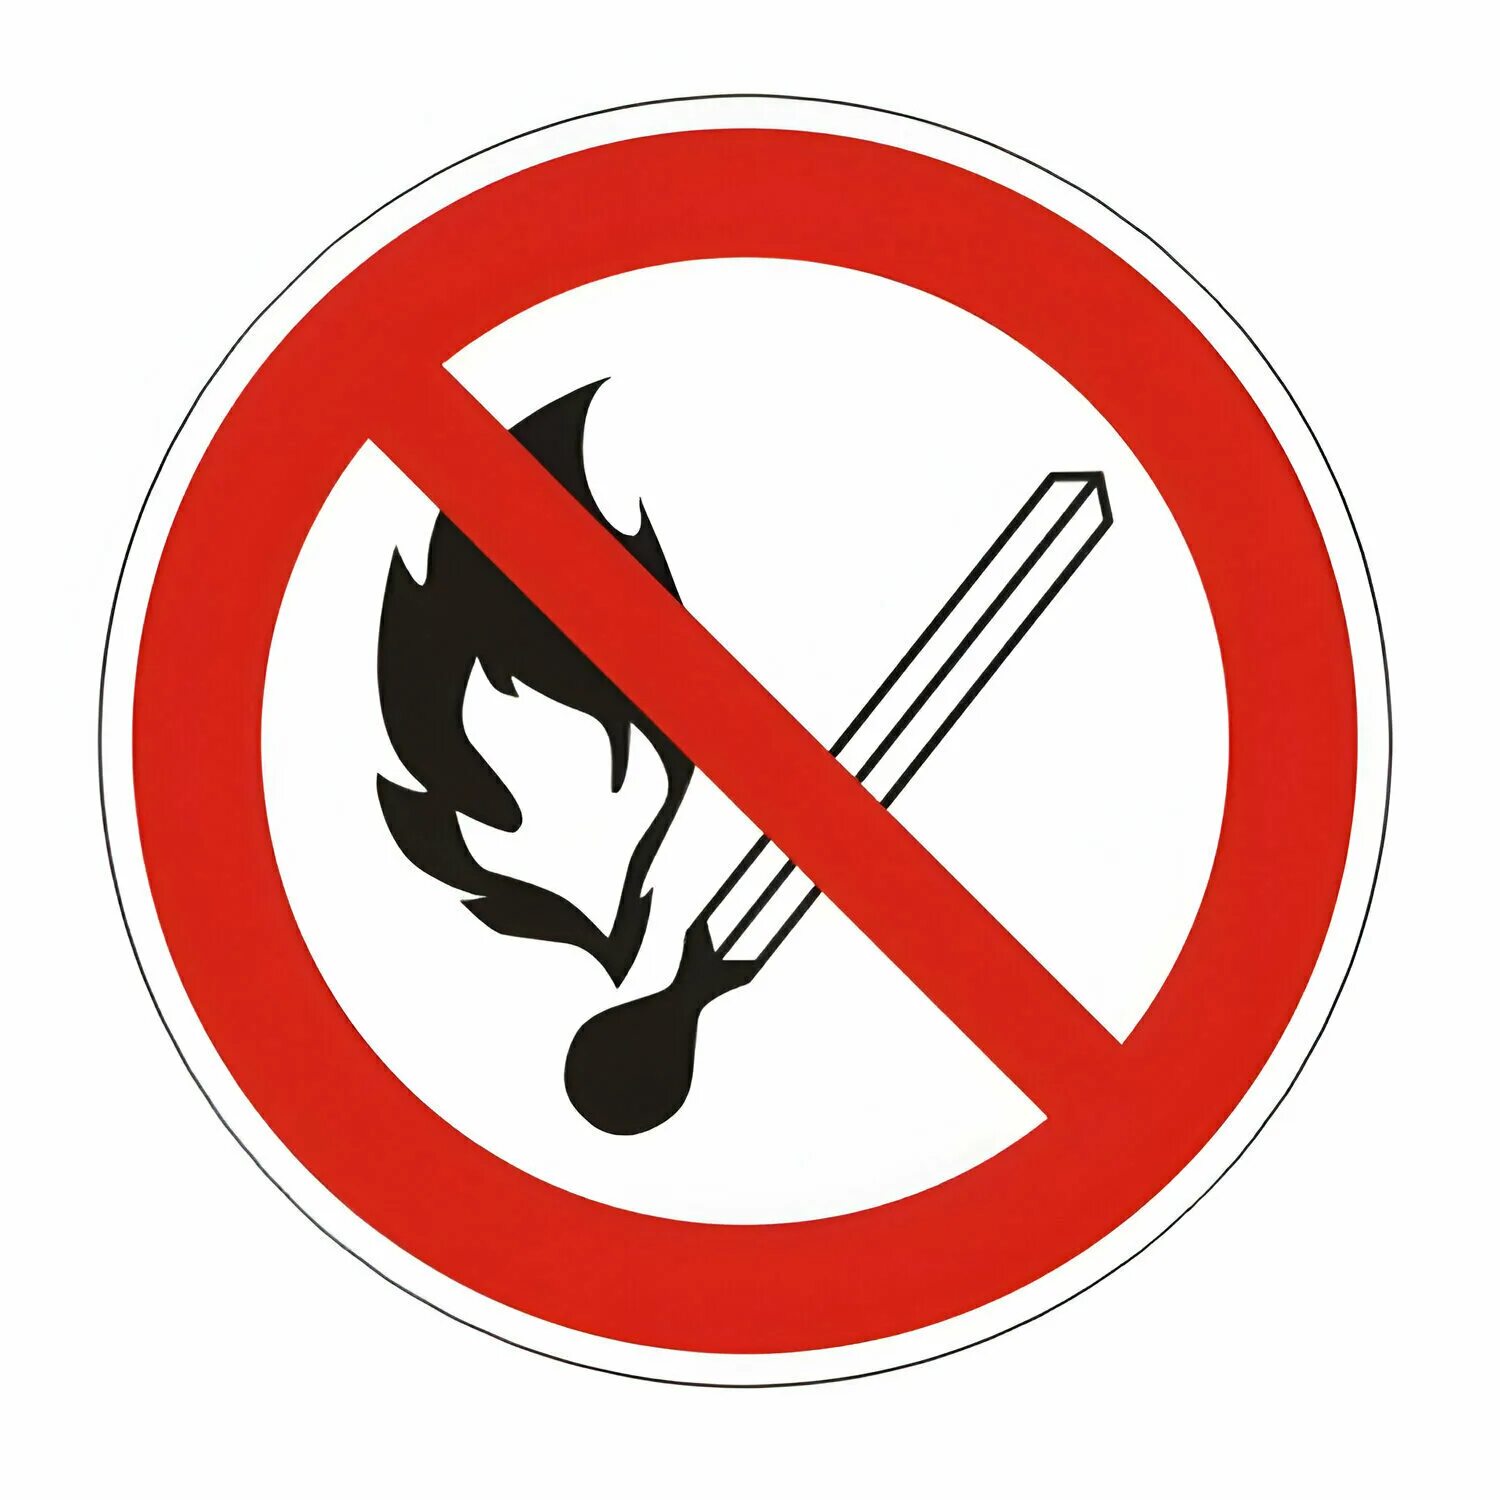 Знак "запрещается пользоваться открытым огнем и курить" а12.г1.н. Знак р02 запрещается пользоваться огнем и курить. Курение и пользование открытым огнем запрещено. Пользоваться открытым огнем запрещено табличка. Запрет можно открывать